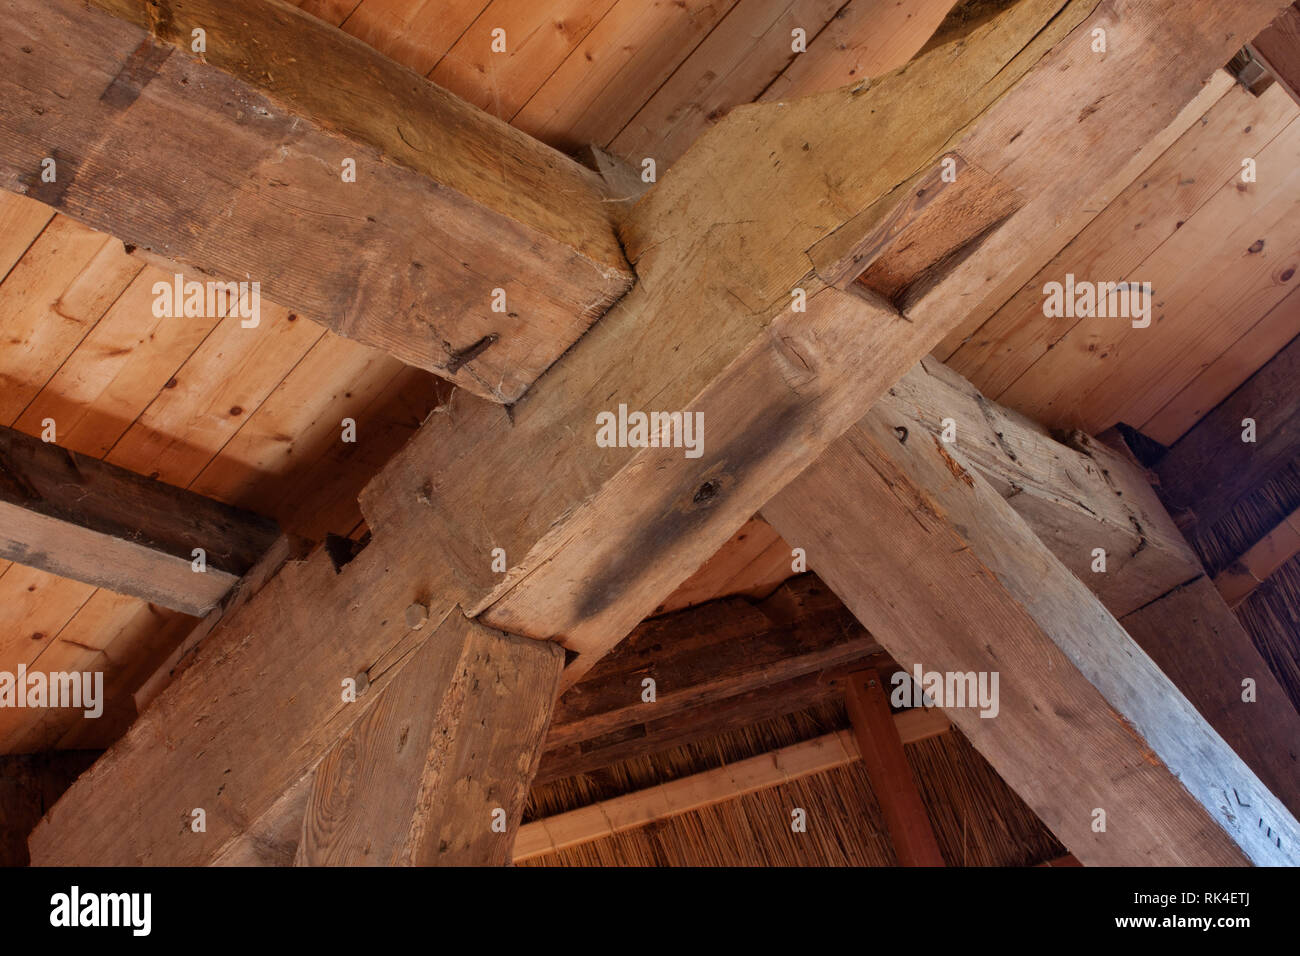 Detalle de un viejo Heavy timber frame, una construcción de vigas y postes en un antiguo edificio Foto de stock